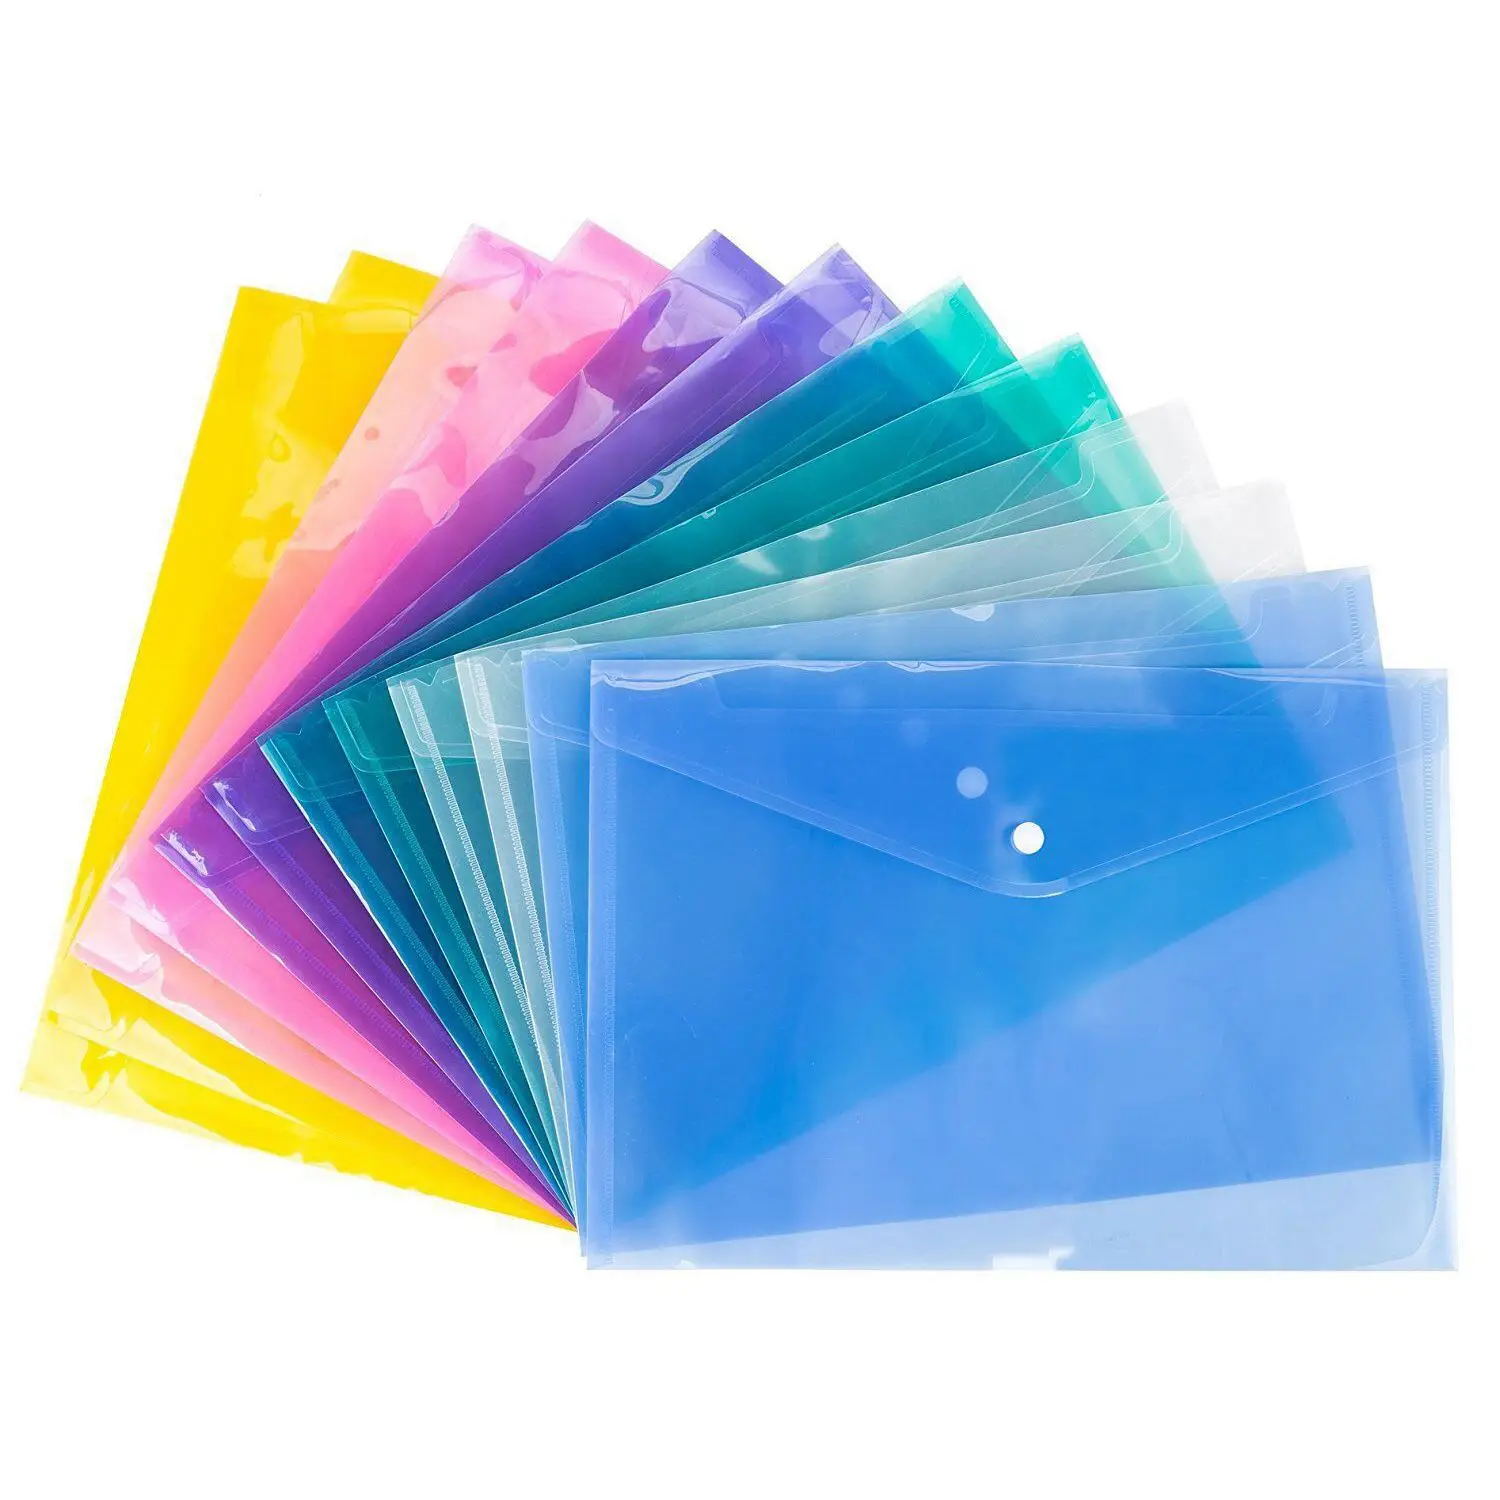 

Бумажники для документов формата А4, 2 шт., пластиковые папки с пряжкой, для хранения бумаги, случайный цвет, 12 шт.